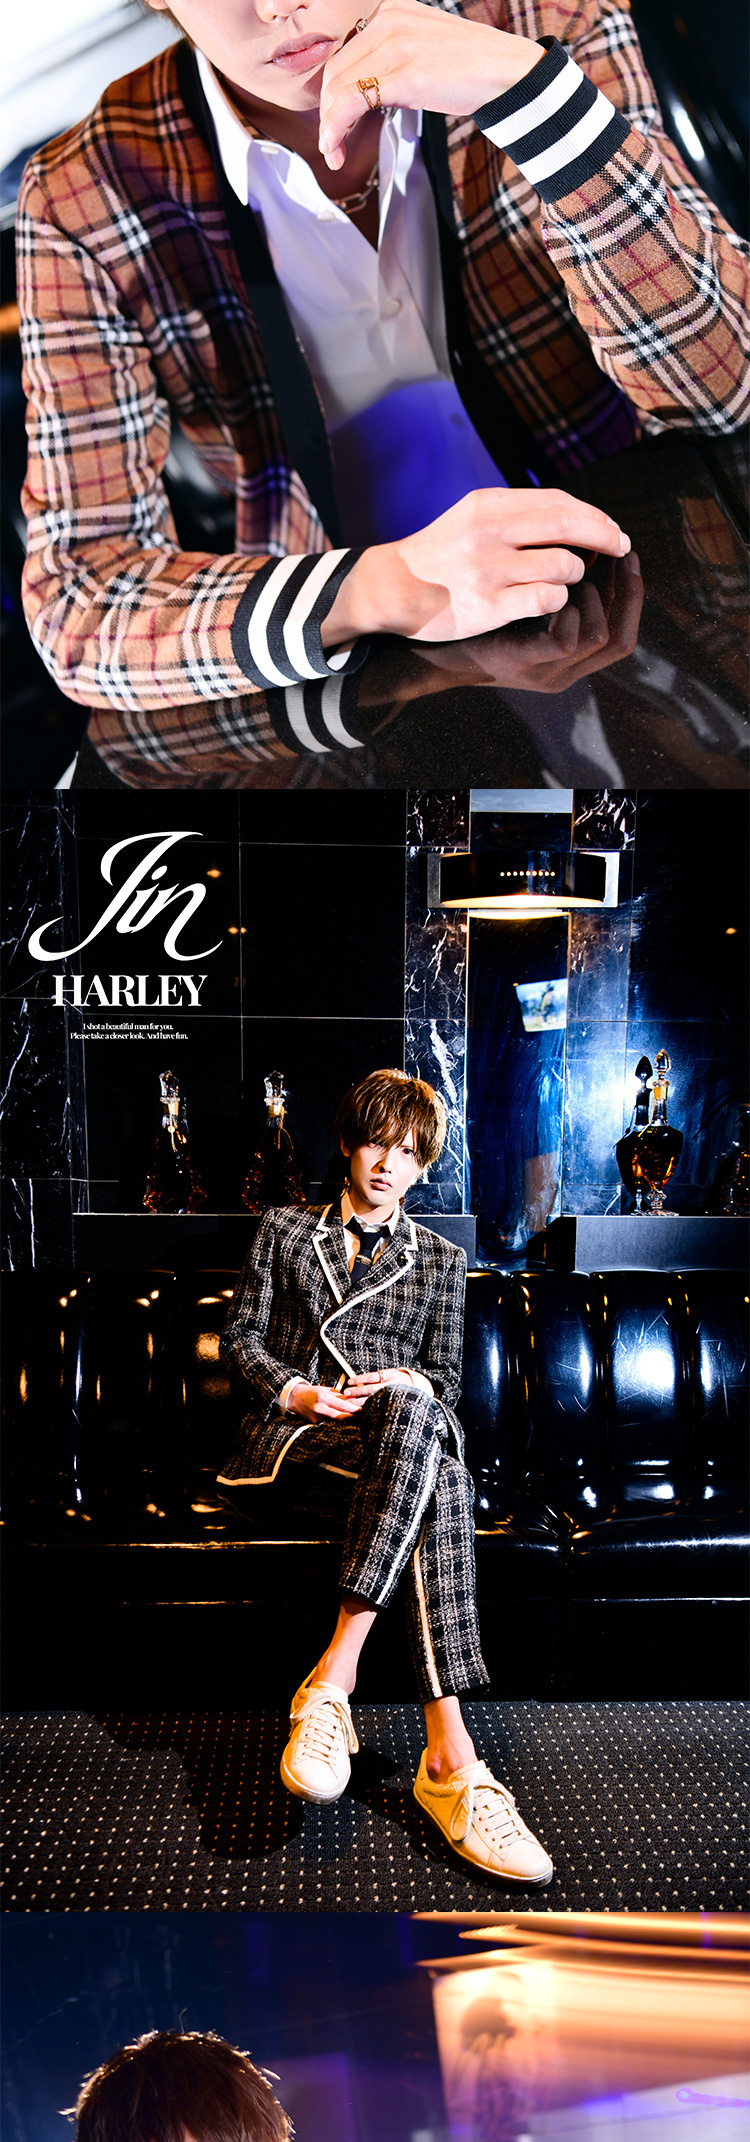 歌舞伎町ホストクラブ HARLEY Jin